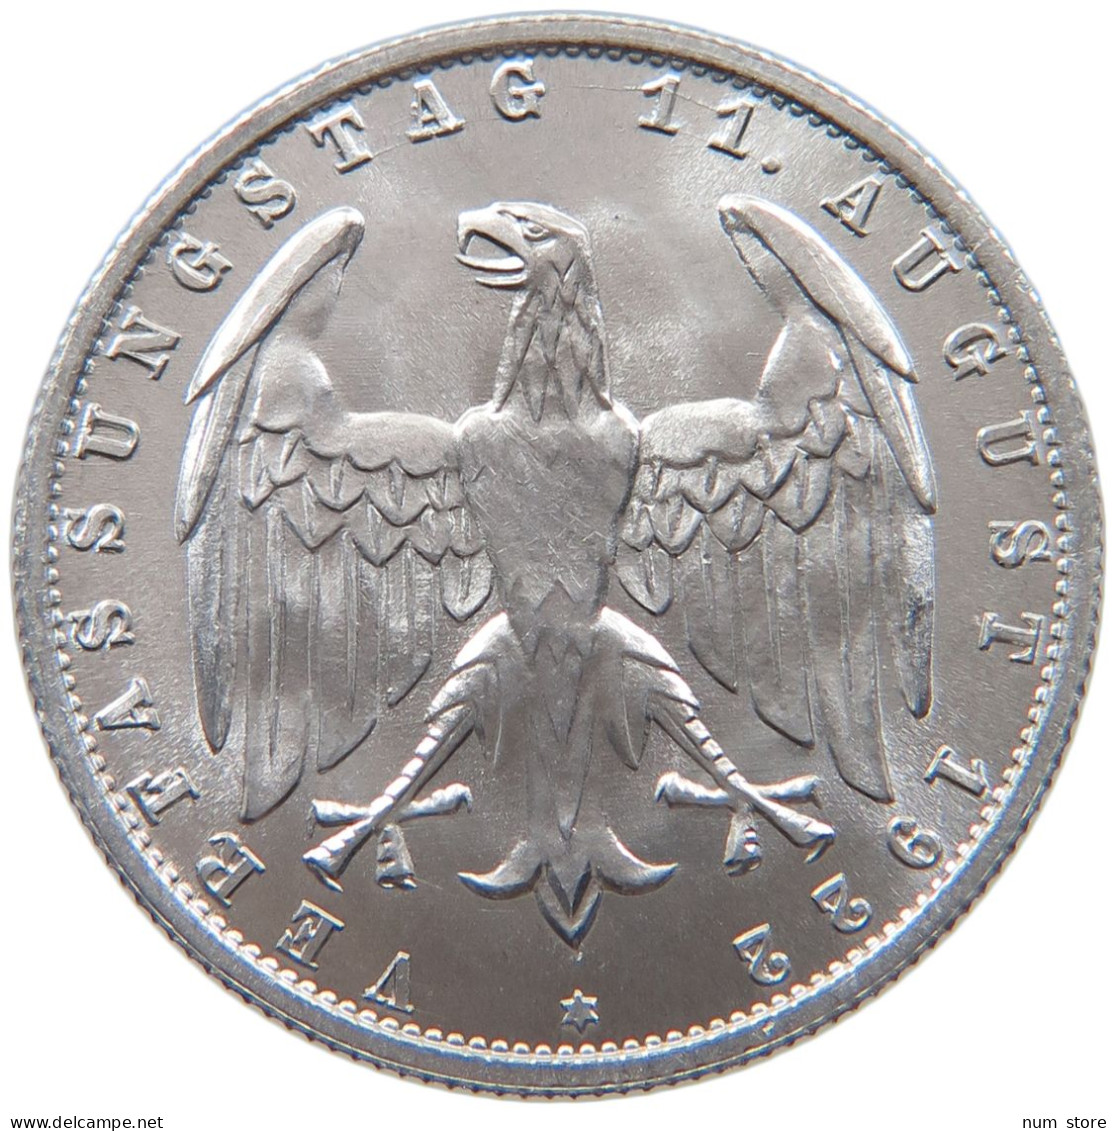 WEIMARER REPUBLIK 3 MARK 1922 A  #s019 0119 - 3 Mark & 3 Reichsmark